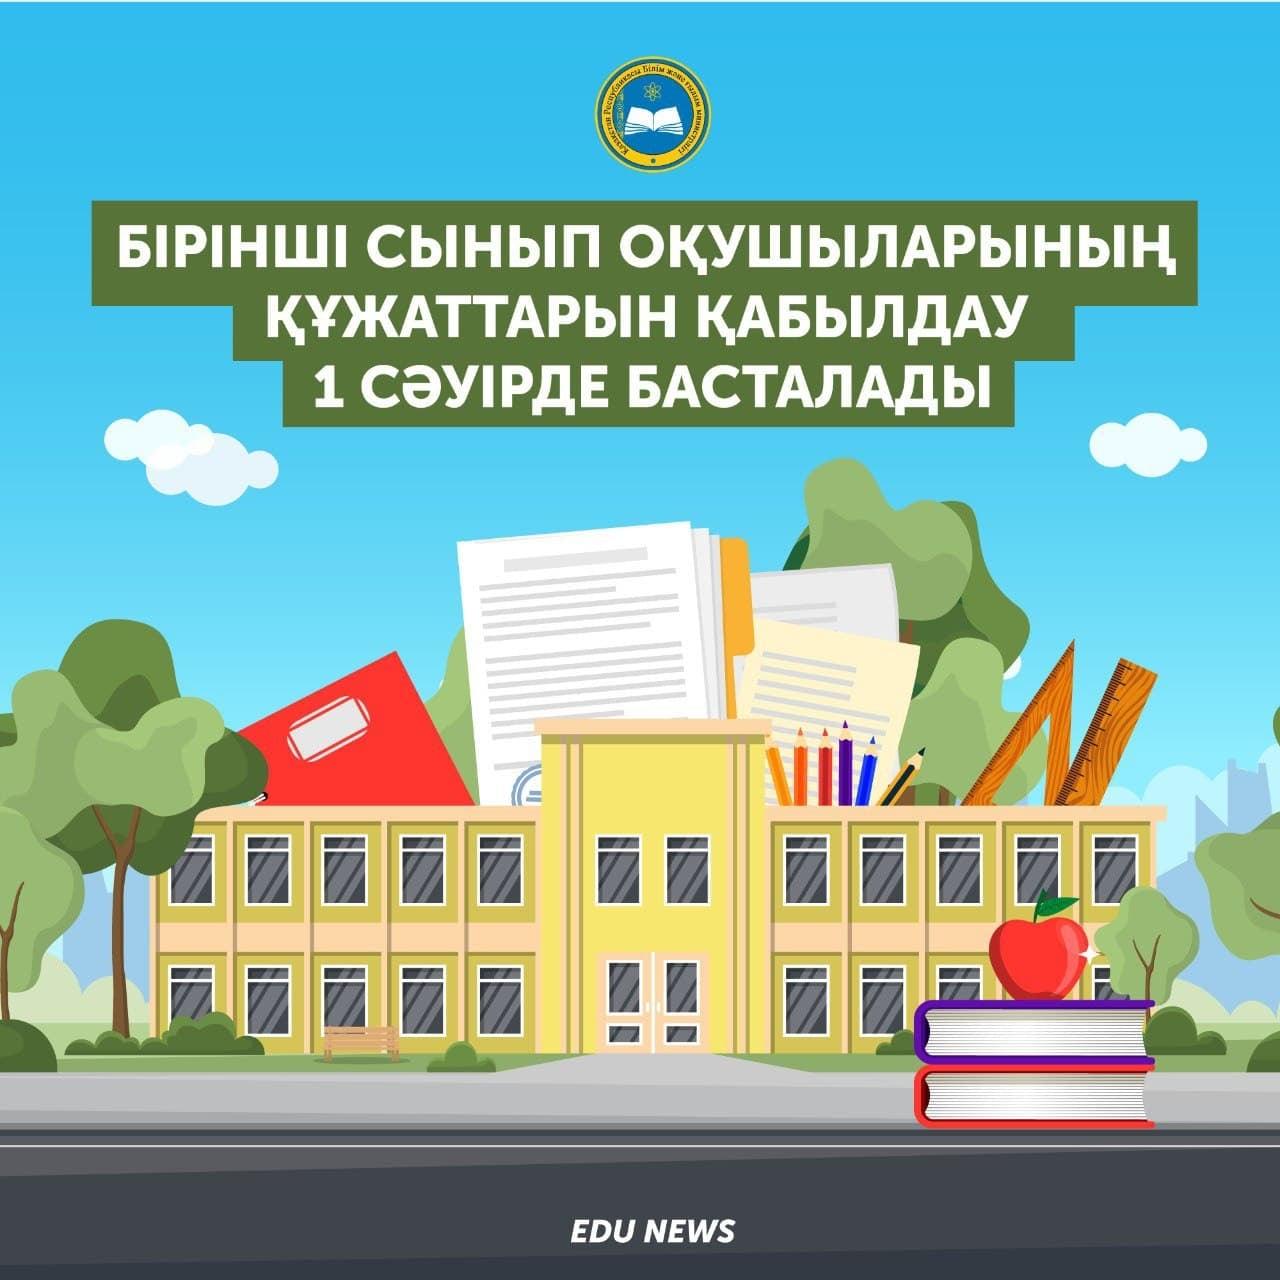 Прием документов в 1 класс начинается  с 1 апреля по 1 августа 2021 г.